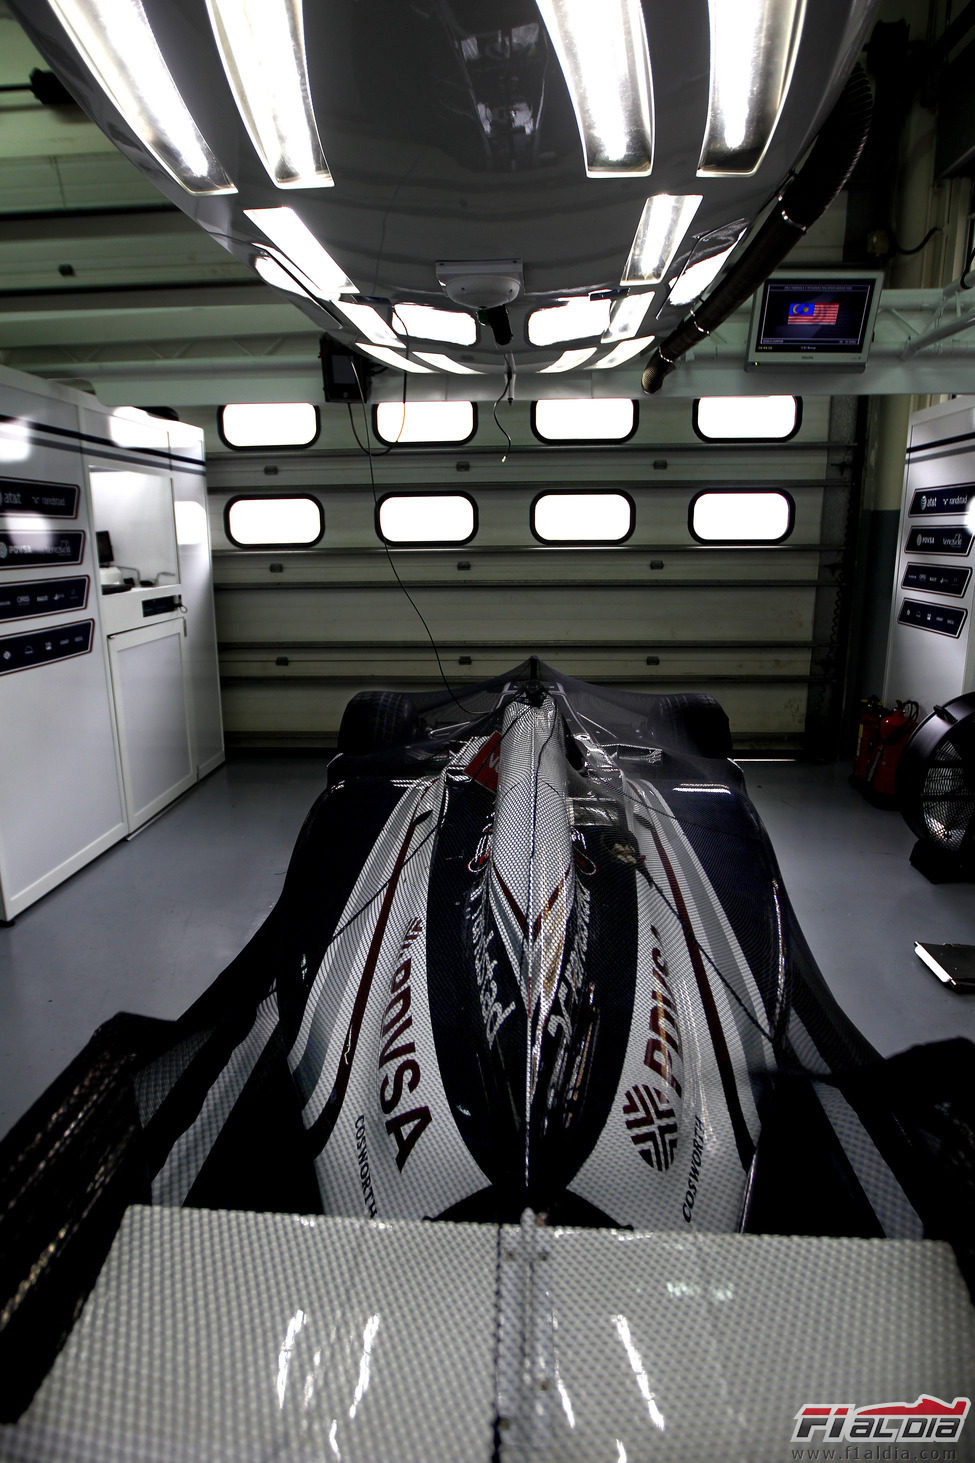 Un Williams FW33 en el garaje del equipo